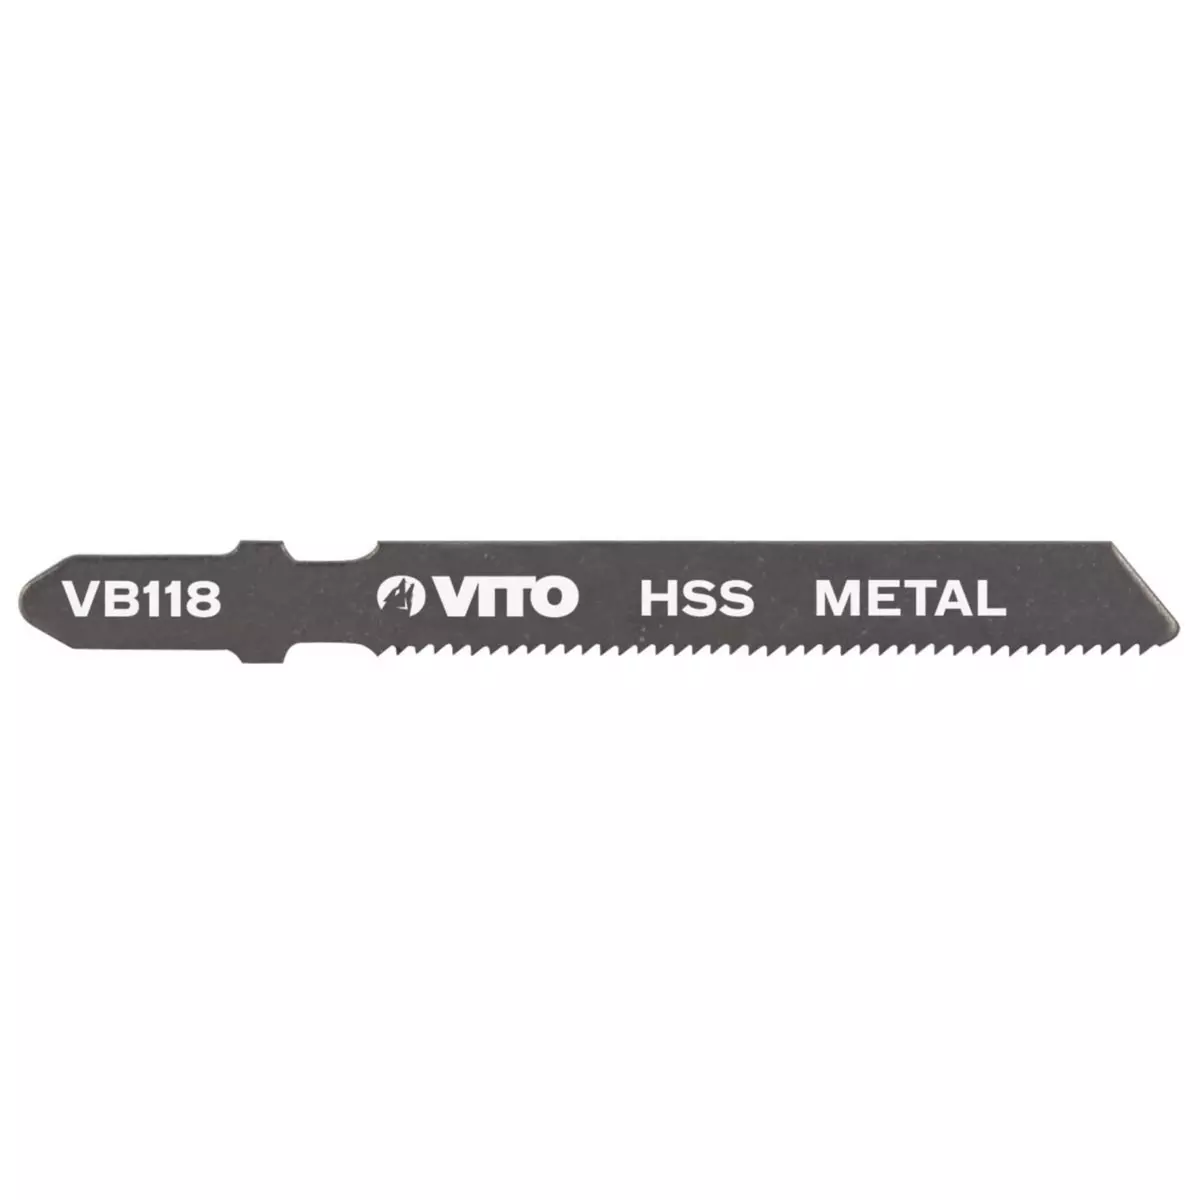 VITO Pro-Power Lames métal pour Scie sauteuse Longueur 77mm VITO Coupe 1 à 3mm Emboîtement Bosch VB118.